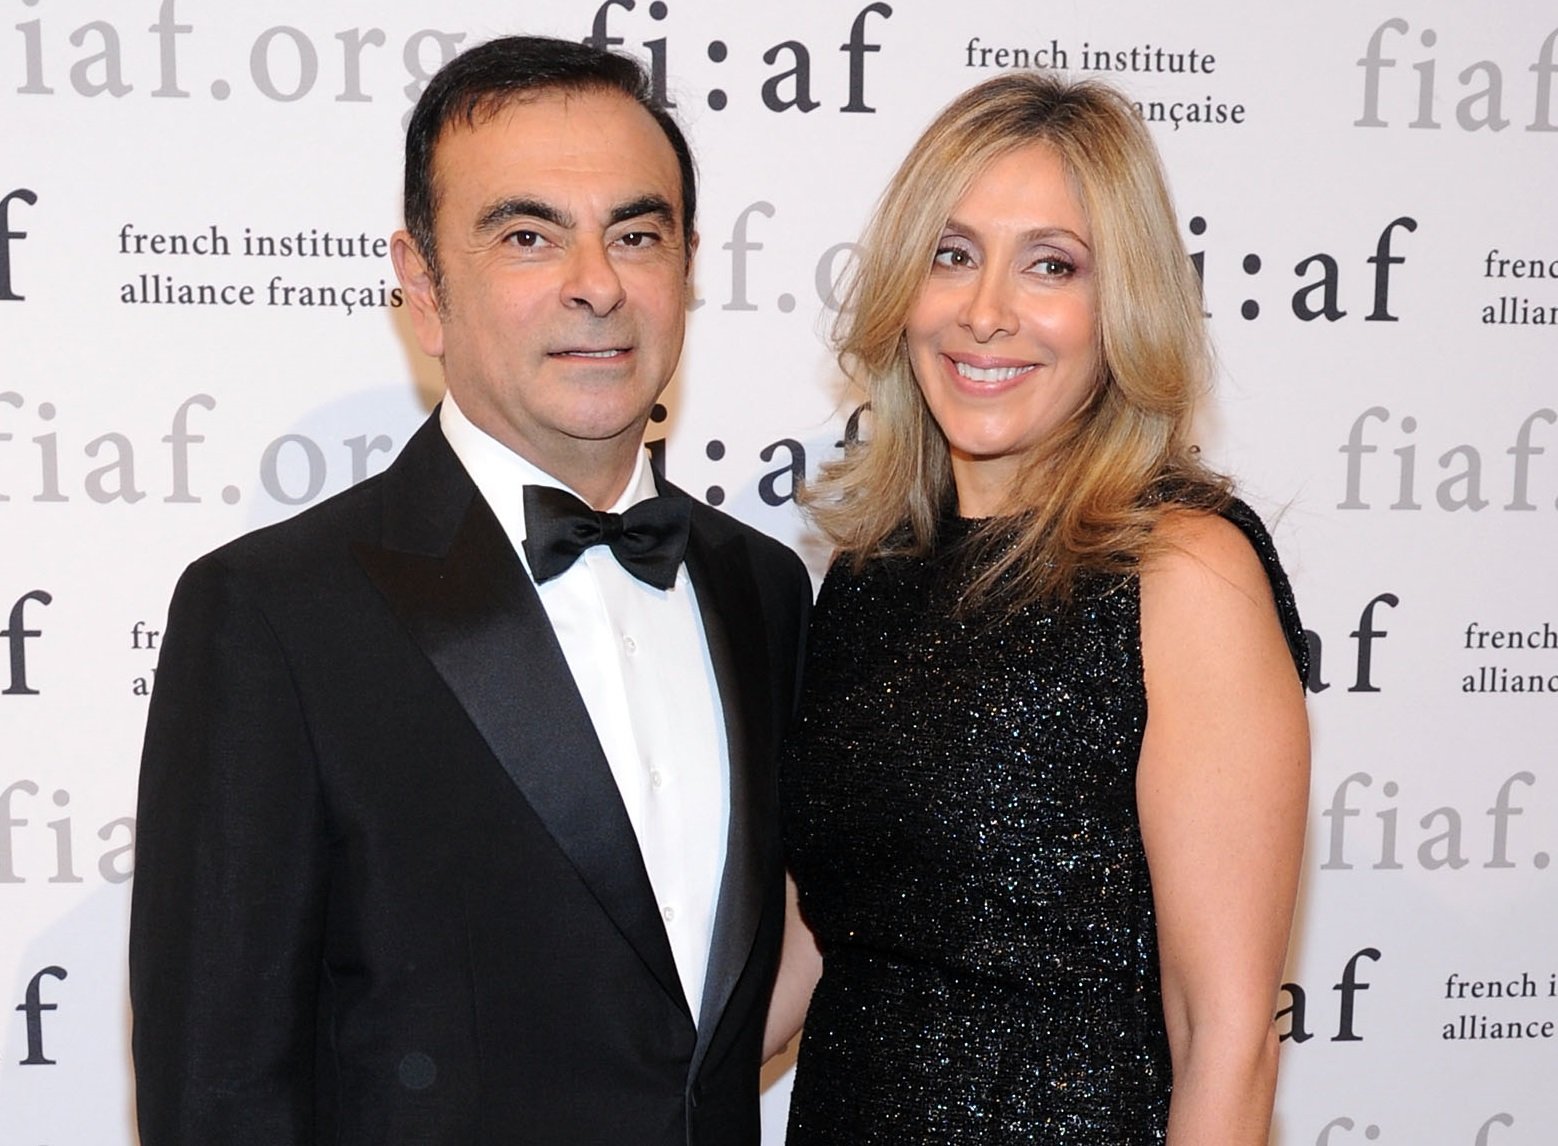 Carlos Ghosn y Carole Nahas en la gala Trophee des Arts en 583 Park Avenue, el 15 de noviembre de 2013 en Nueva York. | Foto: Getty Images